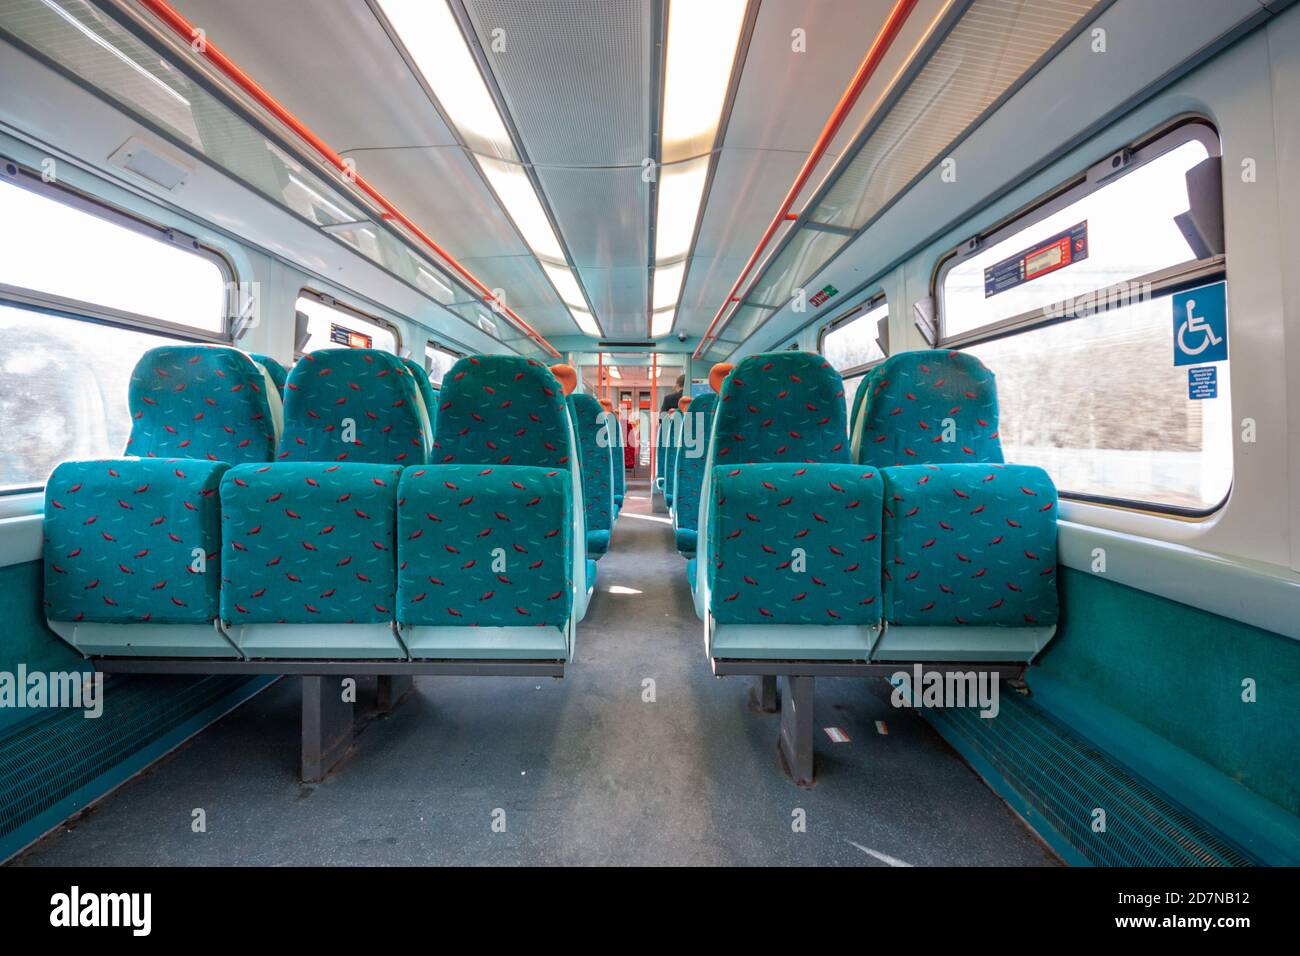 Interno della ferrovia britannica classe 334 treno Juniper nel 2010 con 2+3 posti a sedere in schema colore verde con posti a sedere rossi più in alto. Scozia Regno Unito Foto Stock